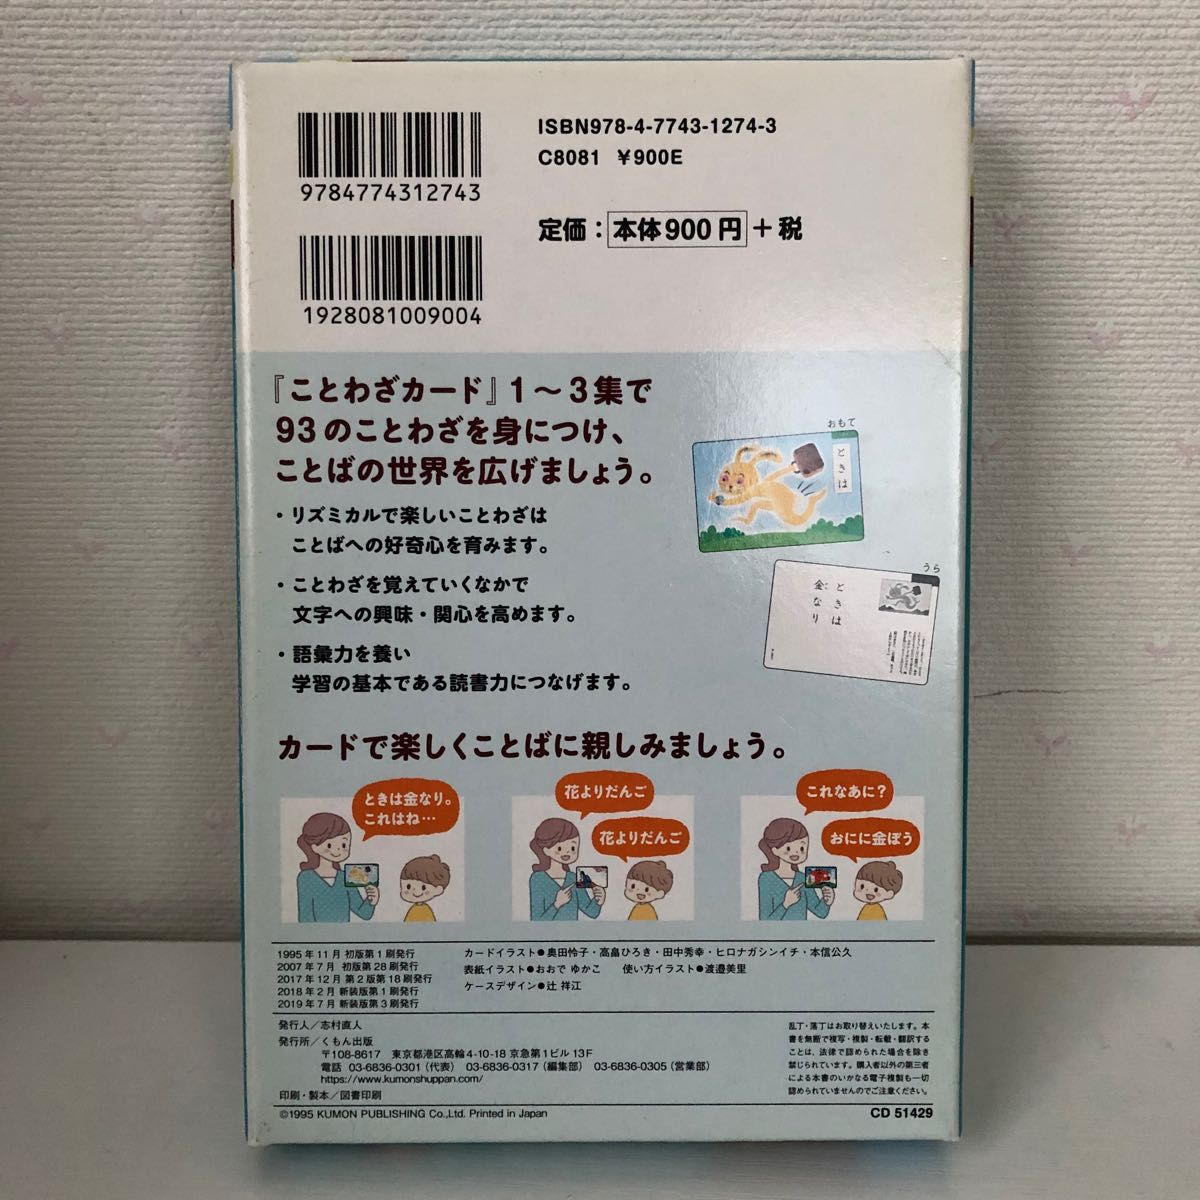 くもん出版 ことわざカード 1 第2版 公文式 KUMON 幼児から 知育 ことわざ 日本語 幼児教育 カード